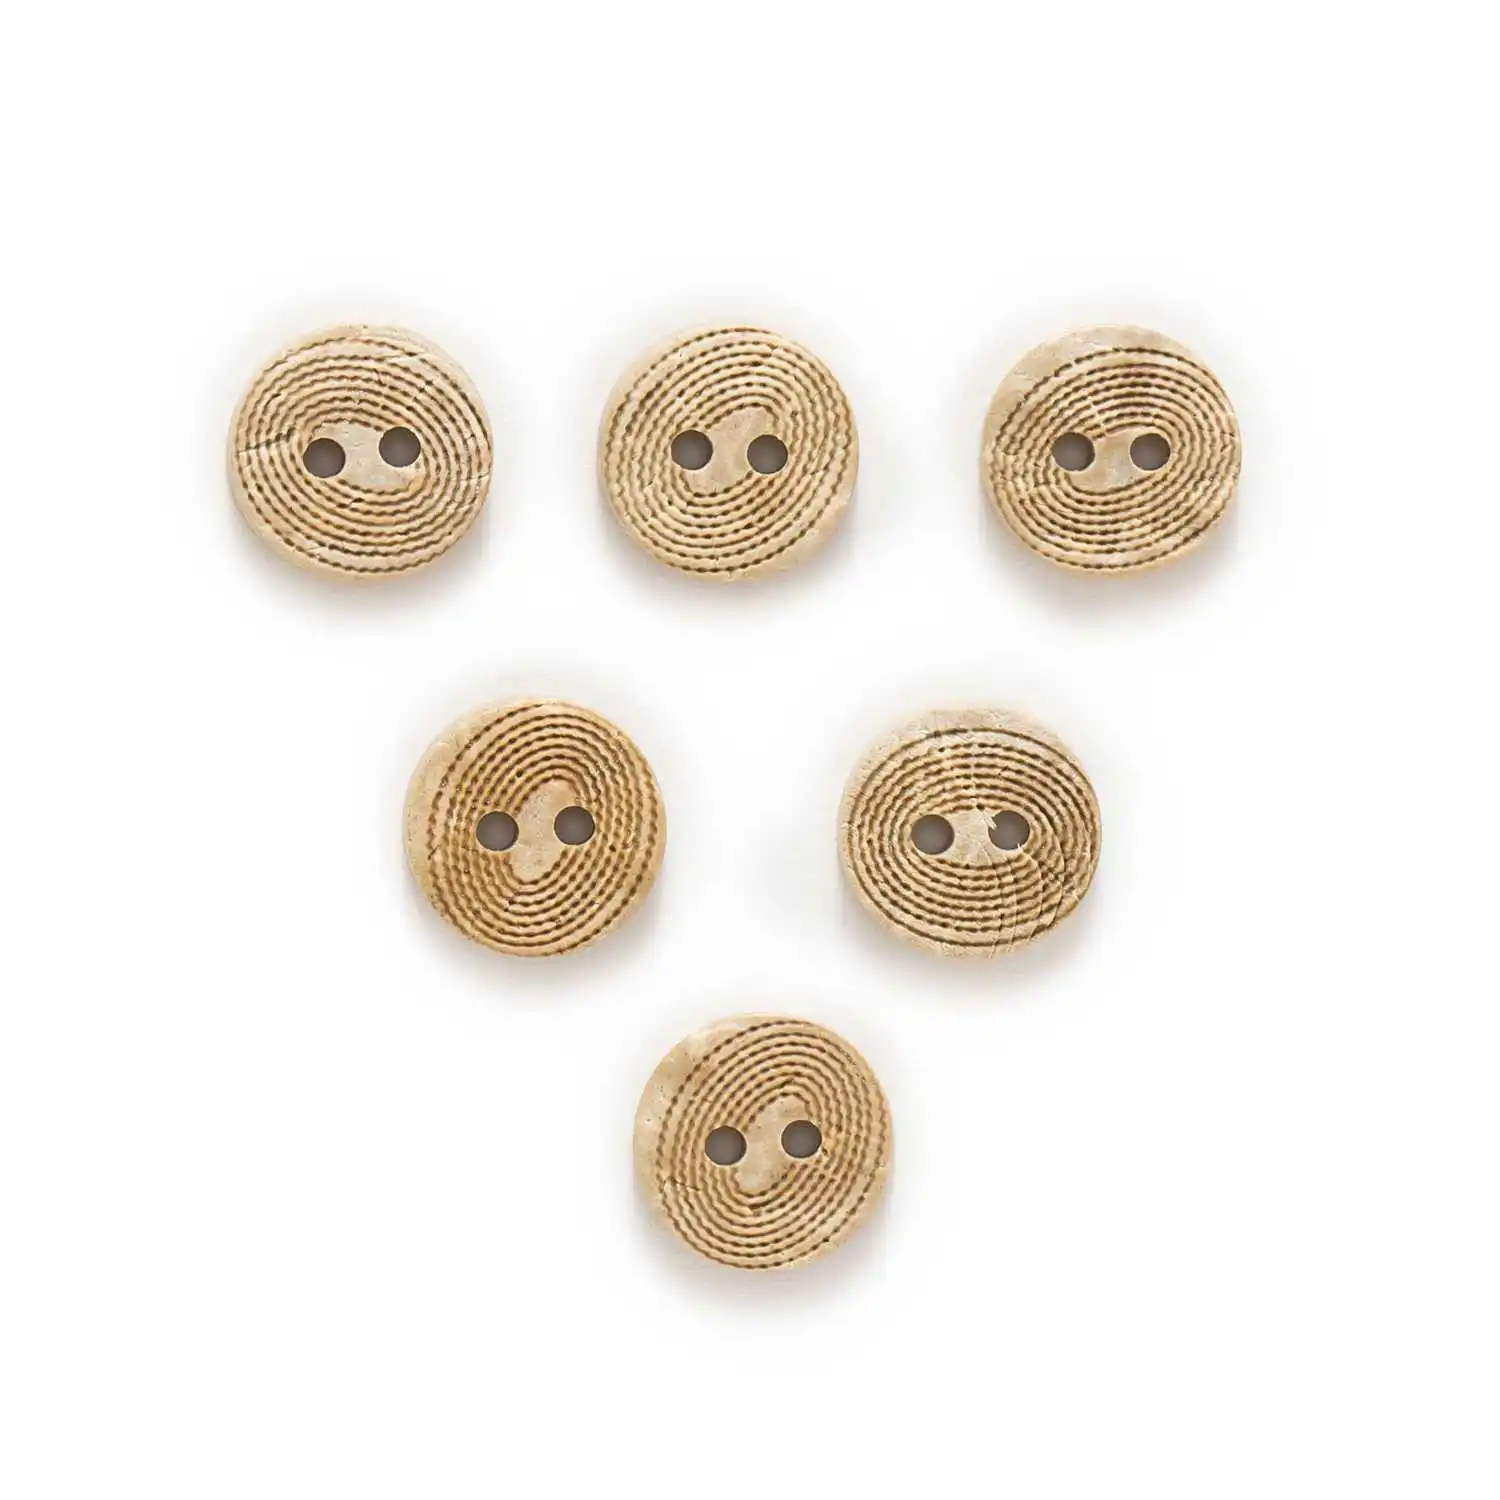 30 шт. несколько вариантов круглые кокосовые пуговицы для пришивания скрапбукинга аксессуары для одежды ручной работы - Цвет: No.10 13mm